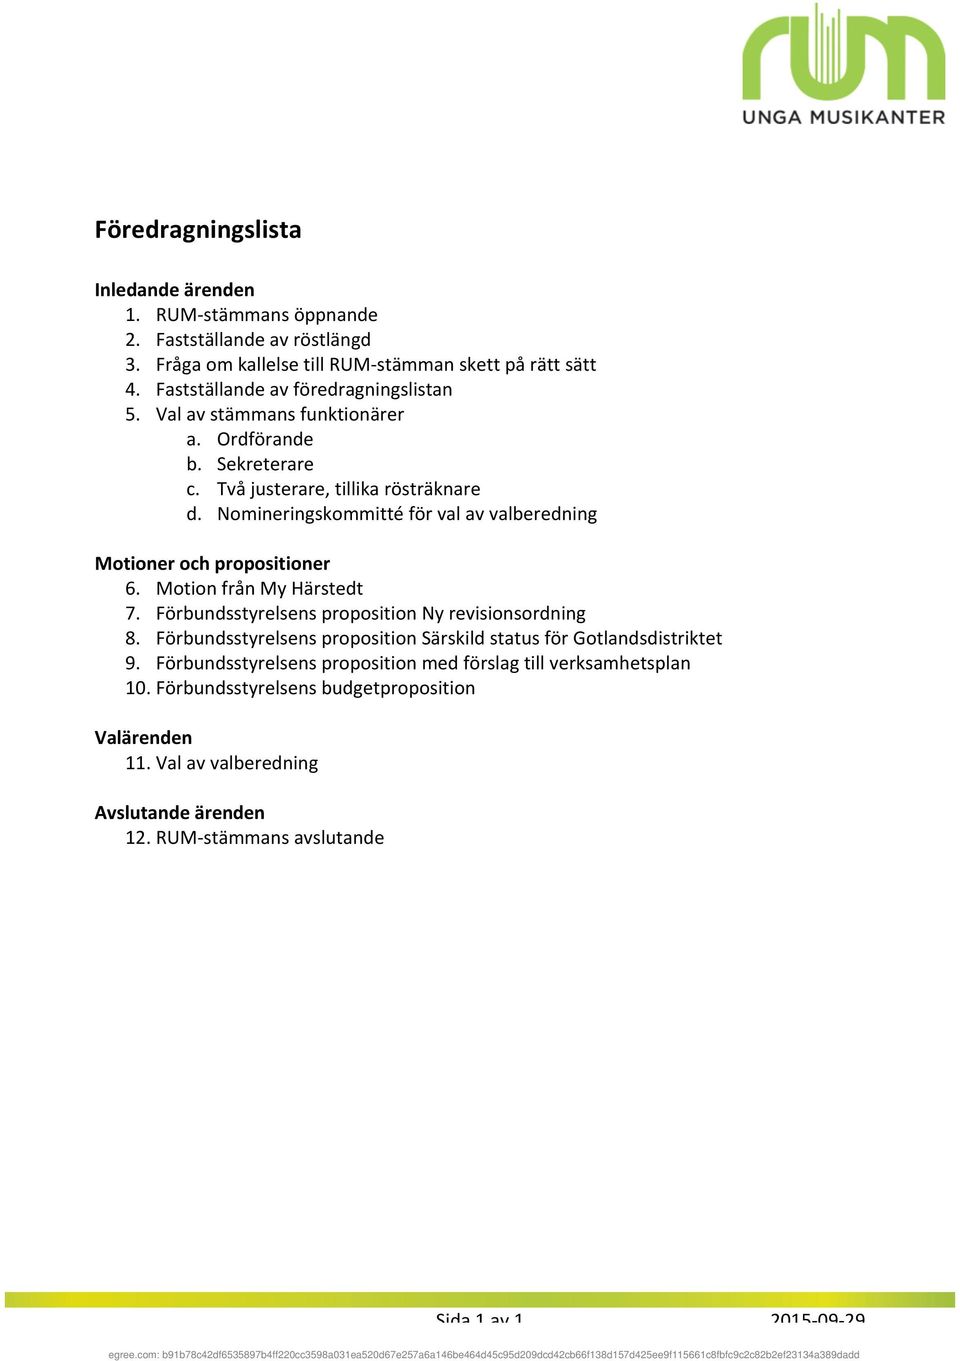 Nomineringskommittéförvalavvalberedning Motioner-och-propositioner- 6. MotionfrånMyHärstedt 7. FörbundsstyrelsenspropositionNyrevisionsordning 8.